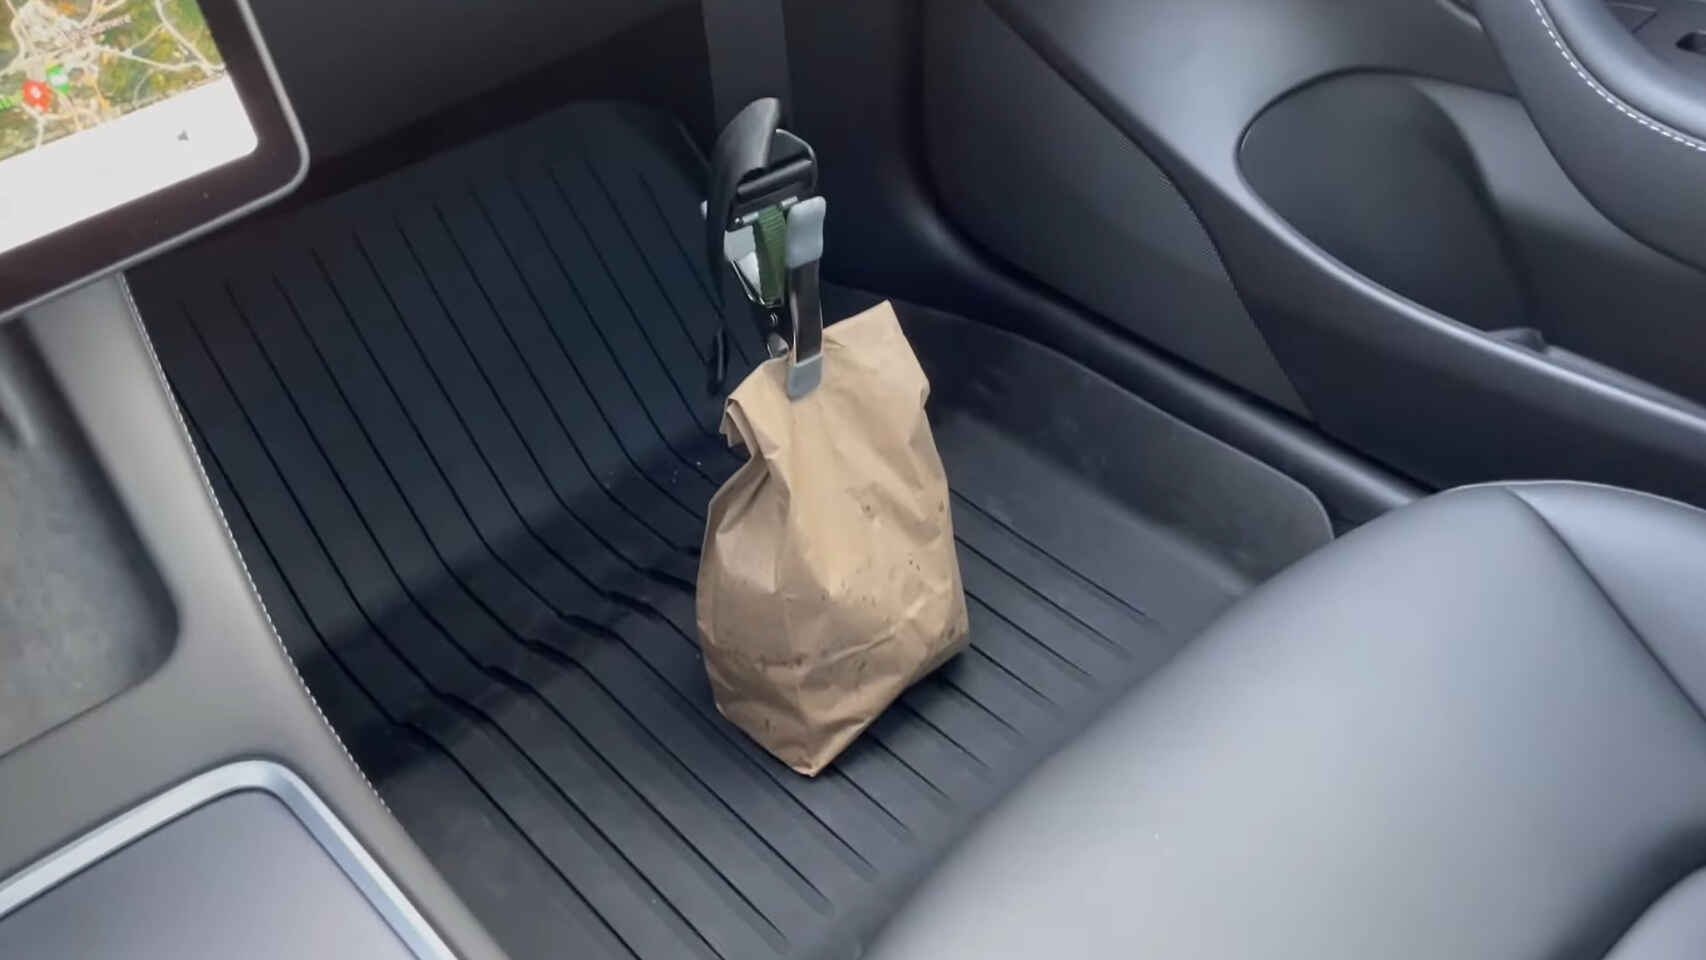 Inventan un cinturón de seguridad para que las bolsas de la compra no se vuelquen en el coche